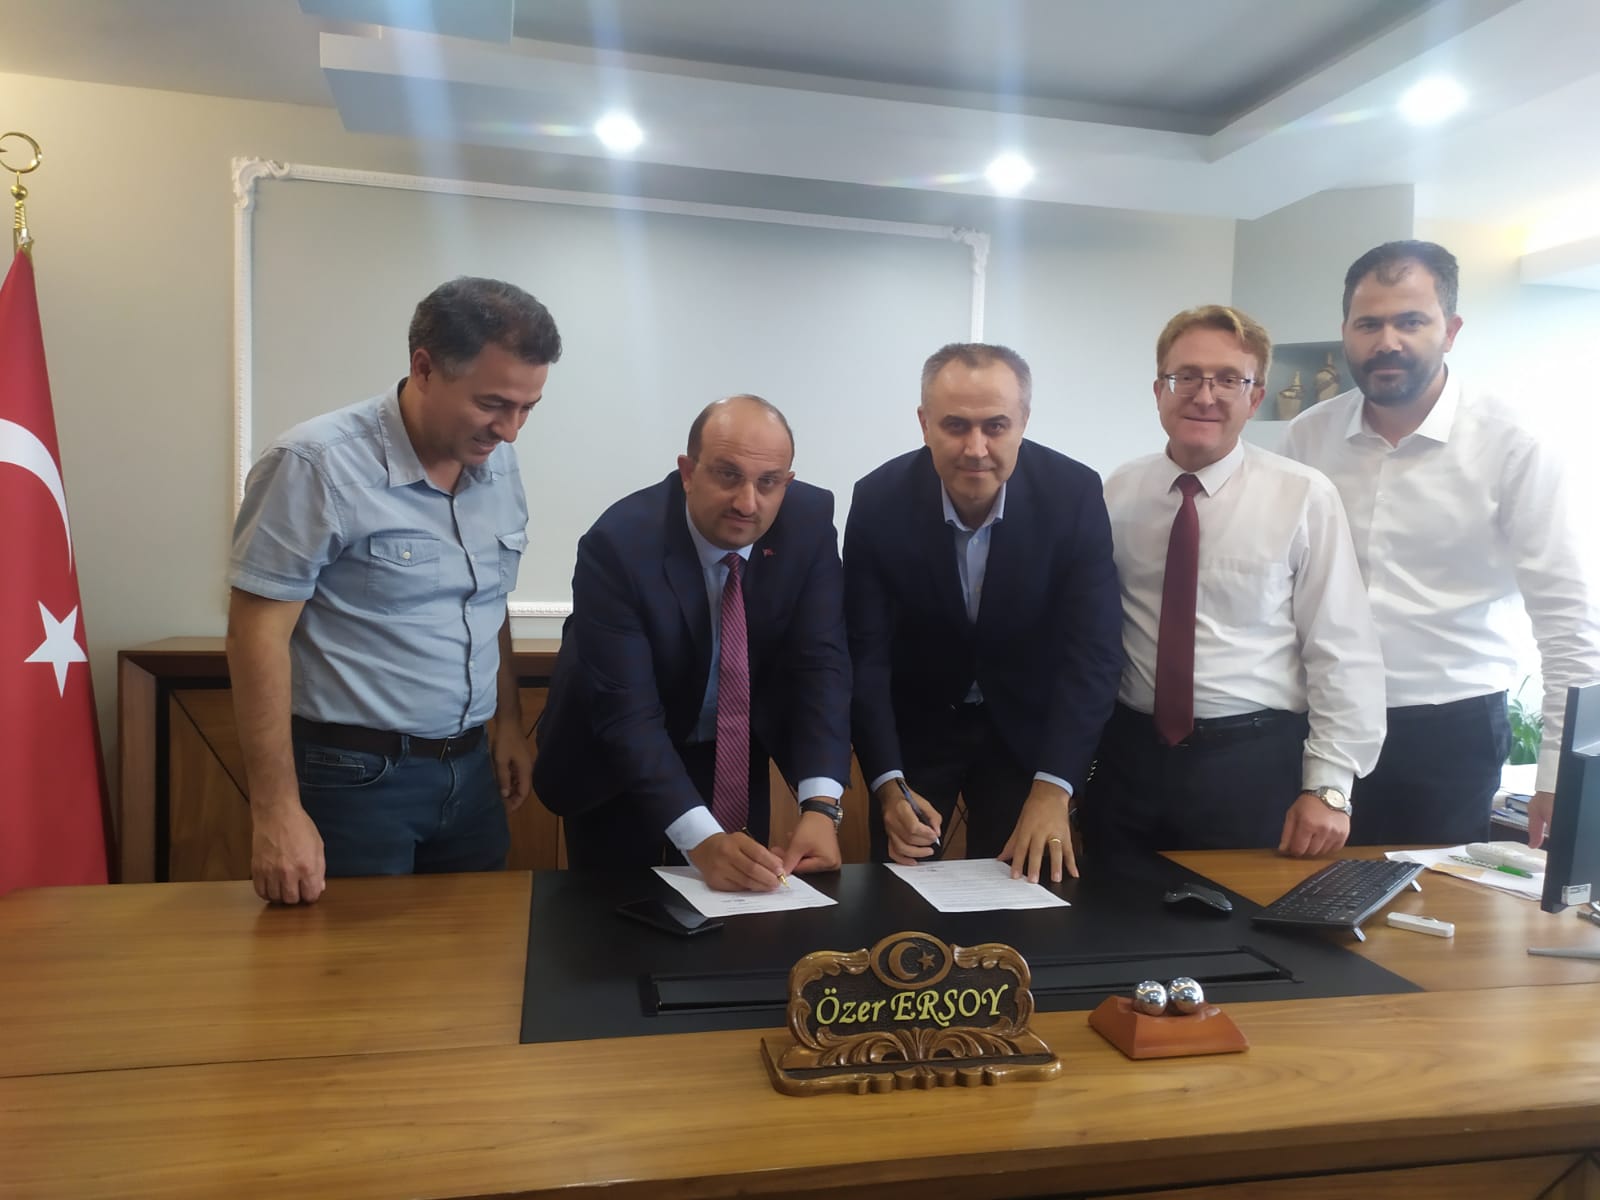 Samsun'da İlkadım Milli Eğitim Müdürlüğü personeli, banka ile yapılan yeni sözleşme sonrası 10 bin 500'er lira daha almaya hak kazandı